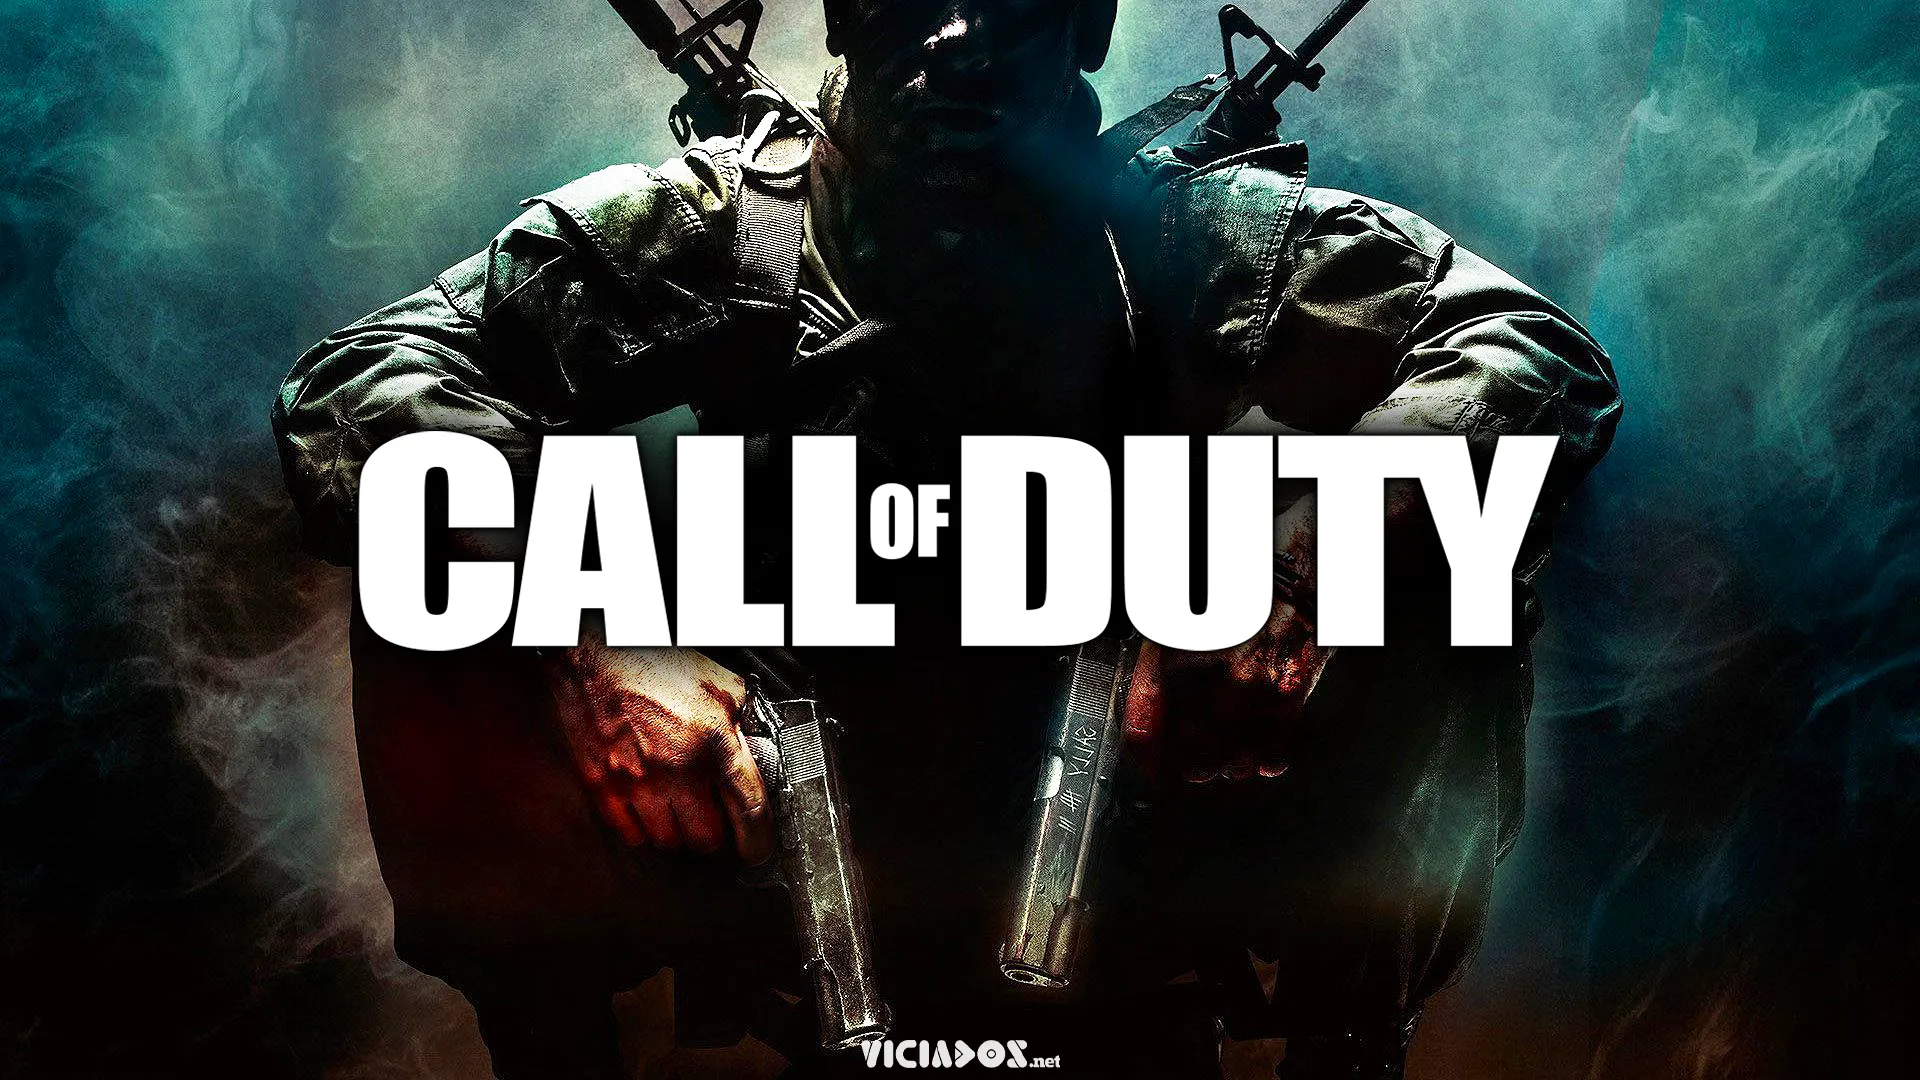 É oficial! Call of Duty confirma nova parceria inédita 2022 Viciados